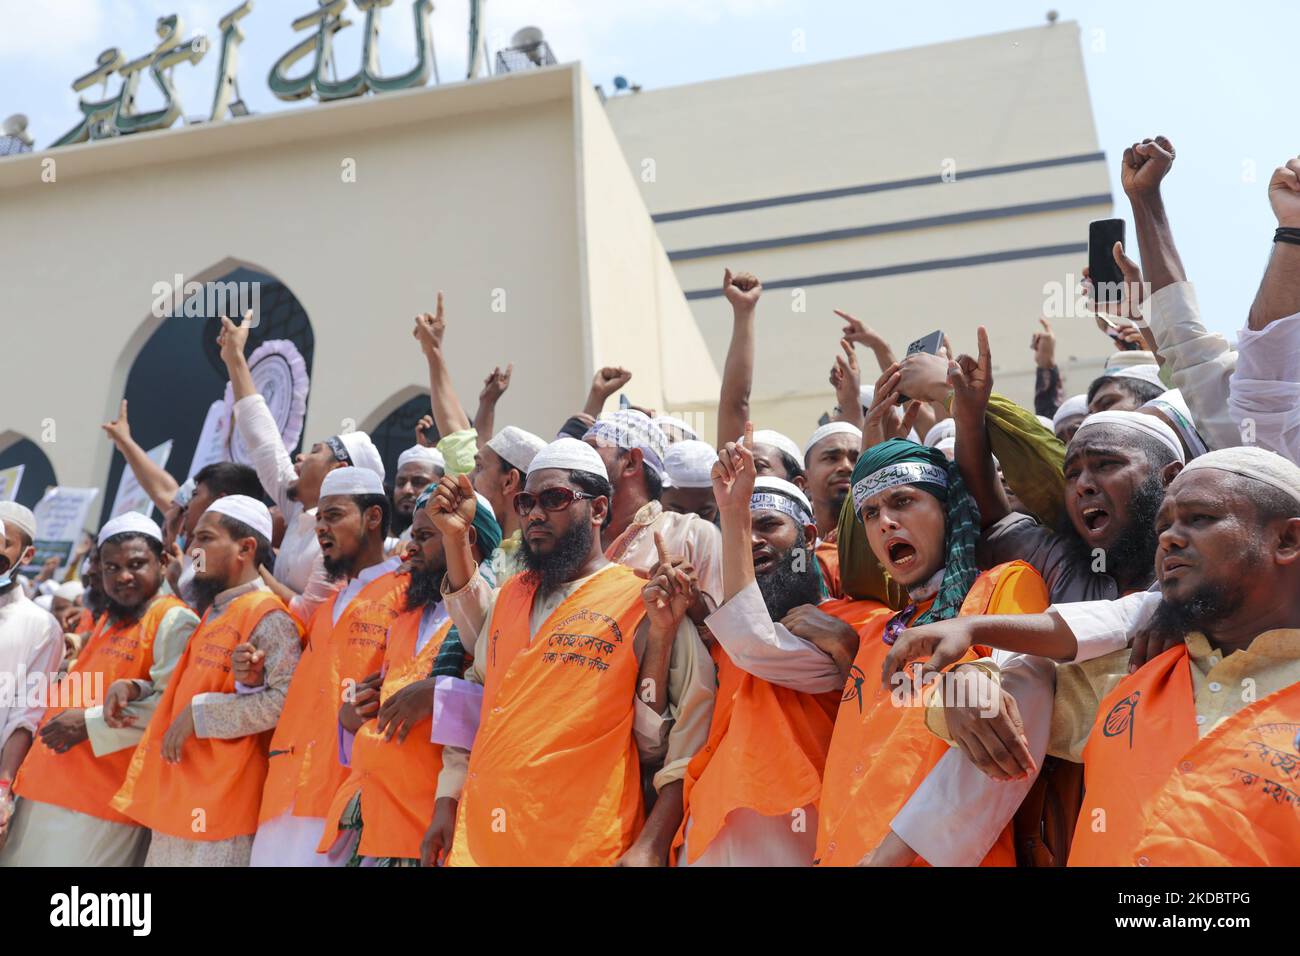 Manifestation de dévot musulmane bangladaise contre le prophète insultant Muhammad par le chef indien du BJP, après un front de jummah de la mosquée Baitul Mukarram à Dhaka, au Bangladesh, sur 10 juin 2022. (Photo de Kazi Salahuddin Razu/NurPhoto) Banque D'Images